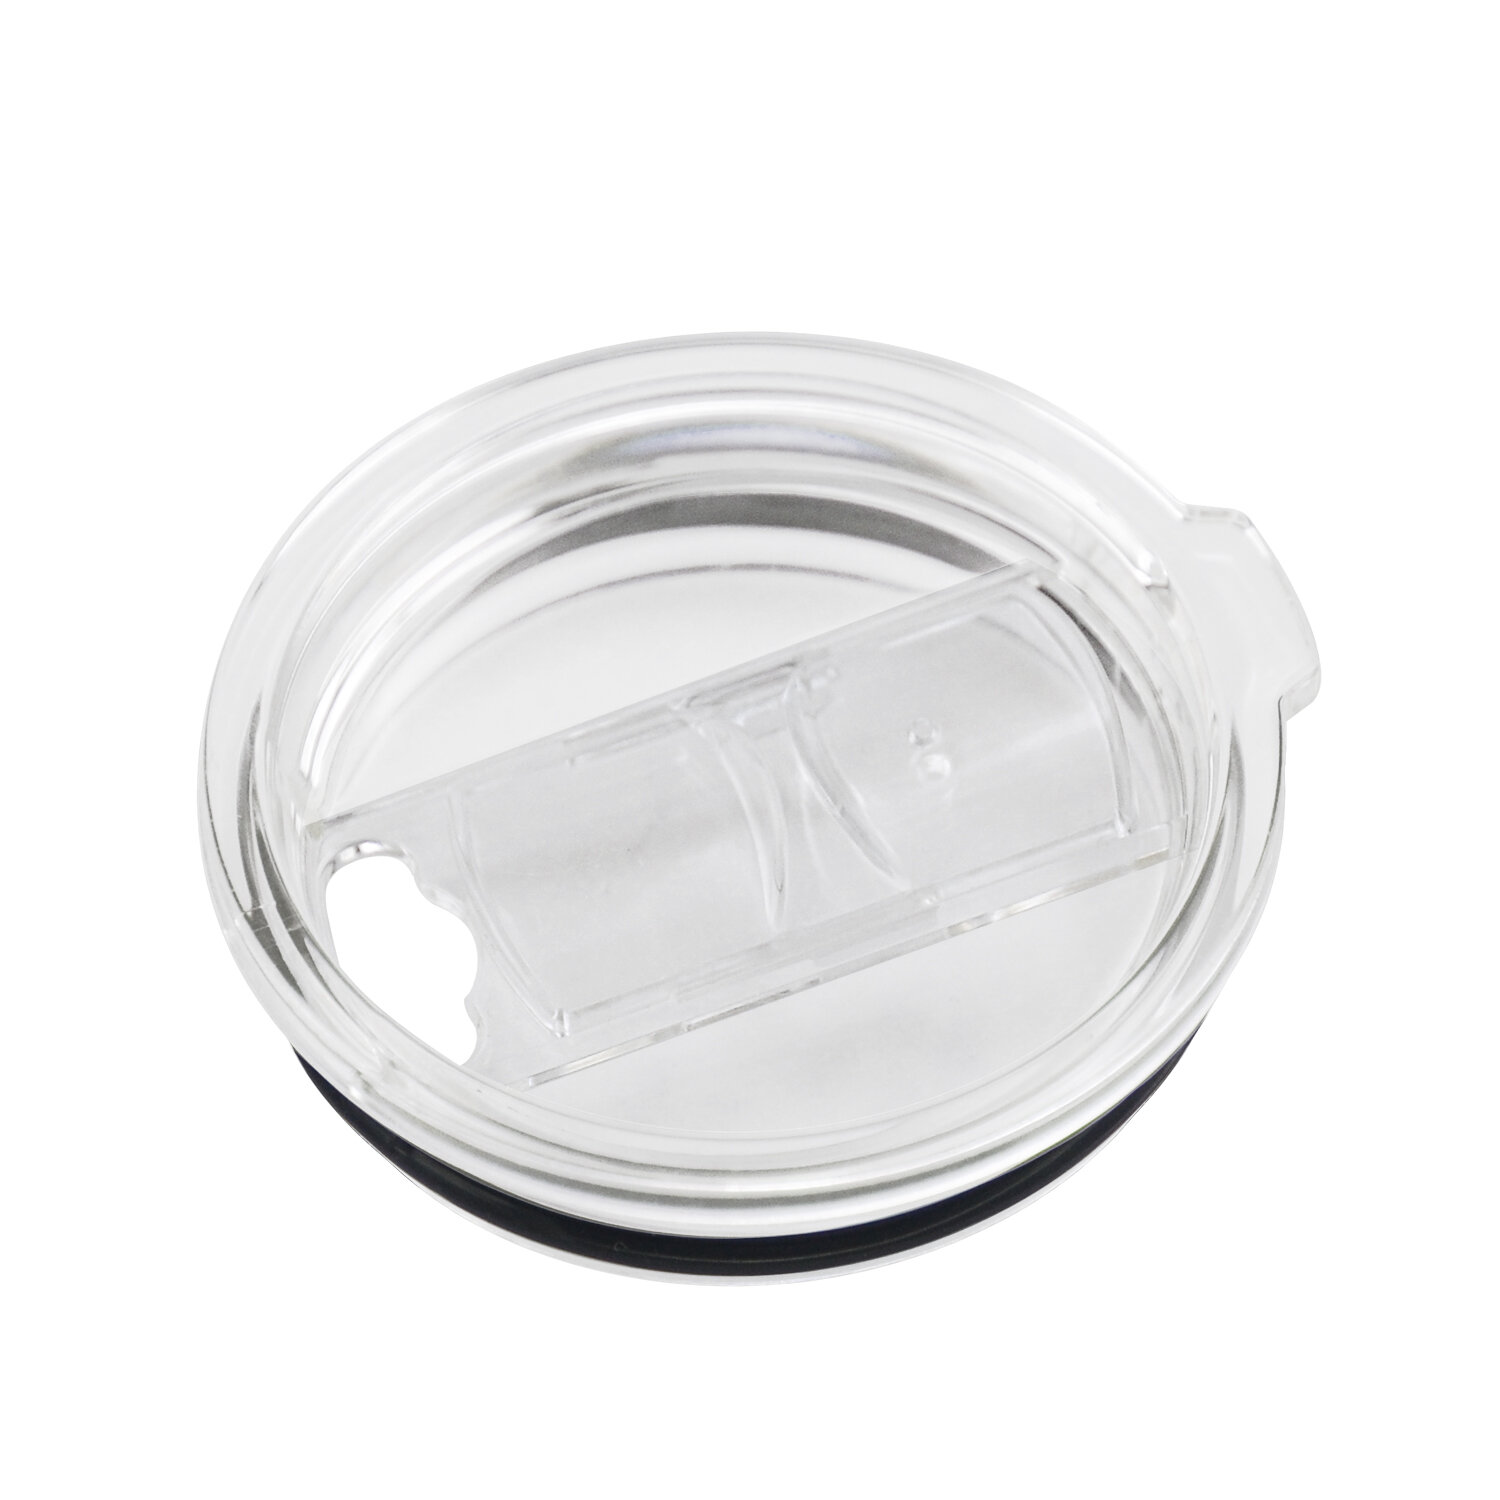 ASOBU Термо чаша с керамично покритие “ULTIMATE“ - 400 мл - цвят черен